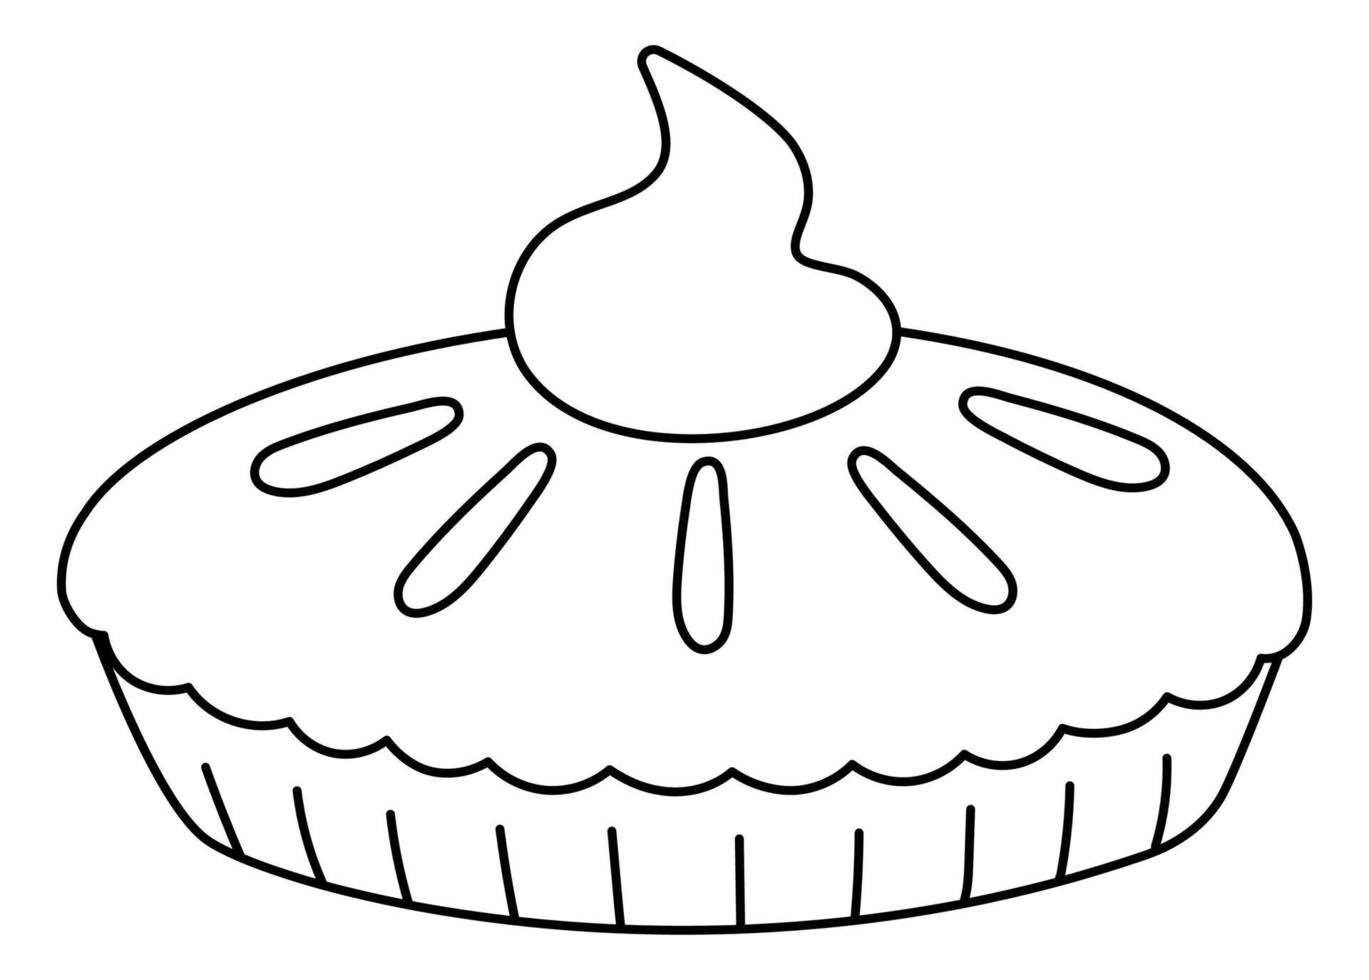 vetor tradicional preto e branco de ação de Graças a vista lateral de torta de abóbora. sobremesa de outono isolada no fundo branco. ilustração de linha engraçada bonita de refeição de férias de outono com creme.